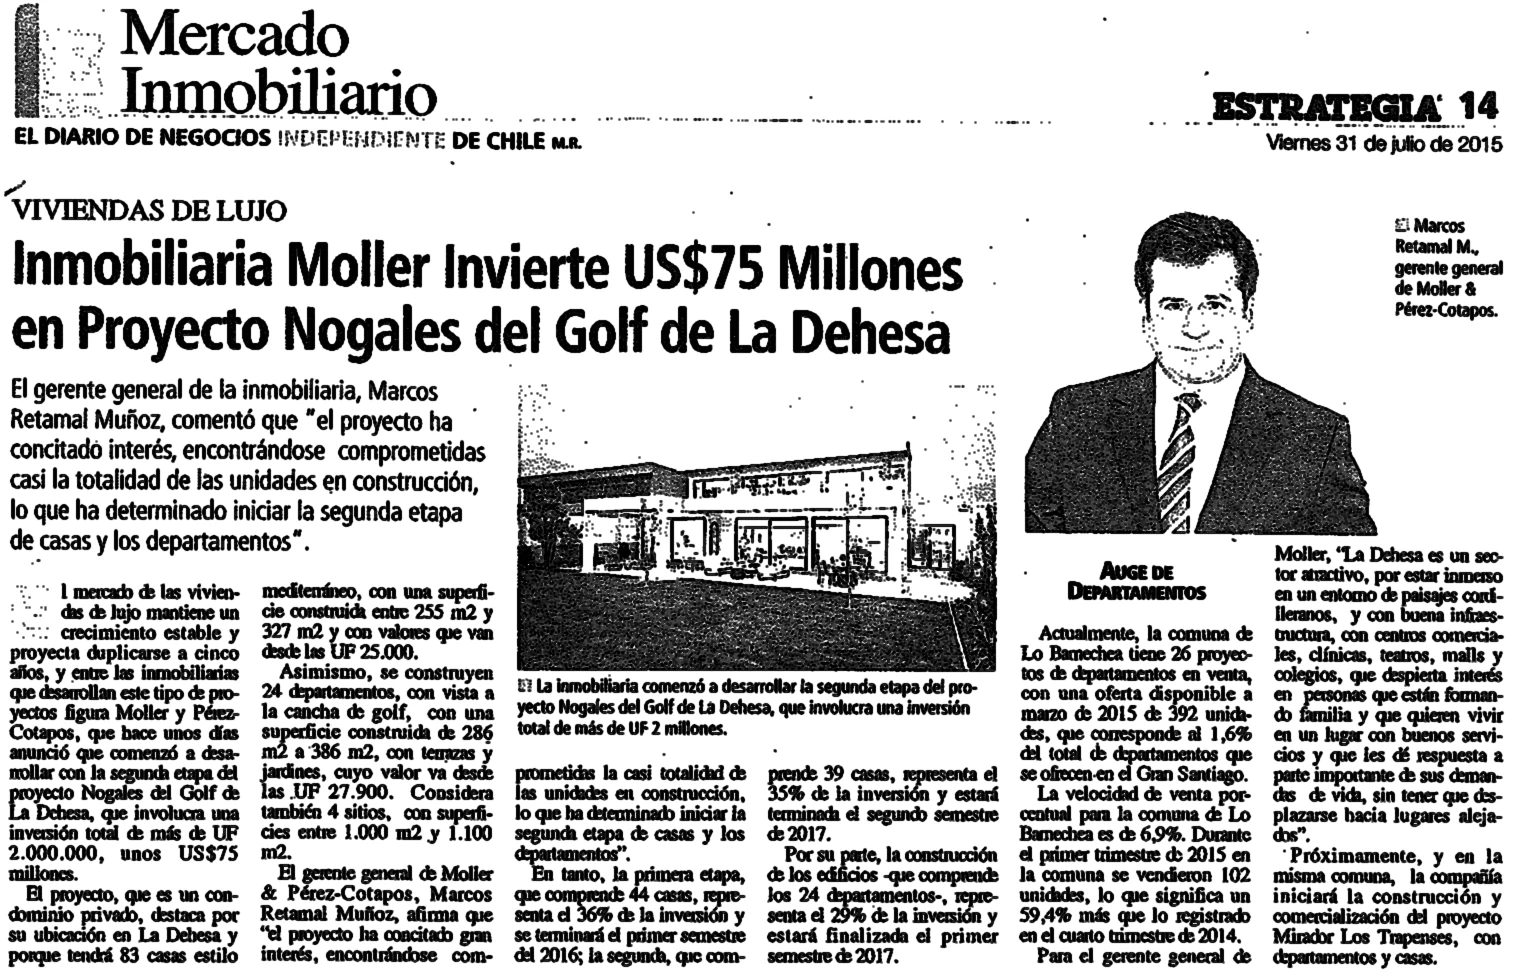 Inmobiliaria Moller Invierte US$75 millones en Proyecto Nogales del Golf de La Dehesa